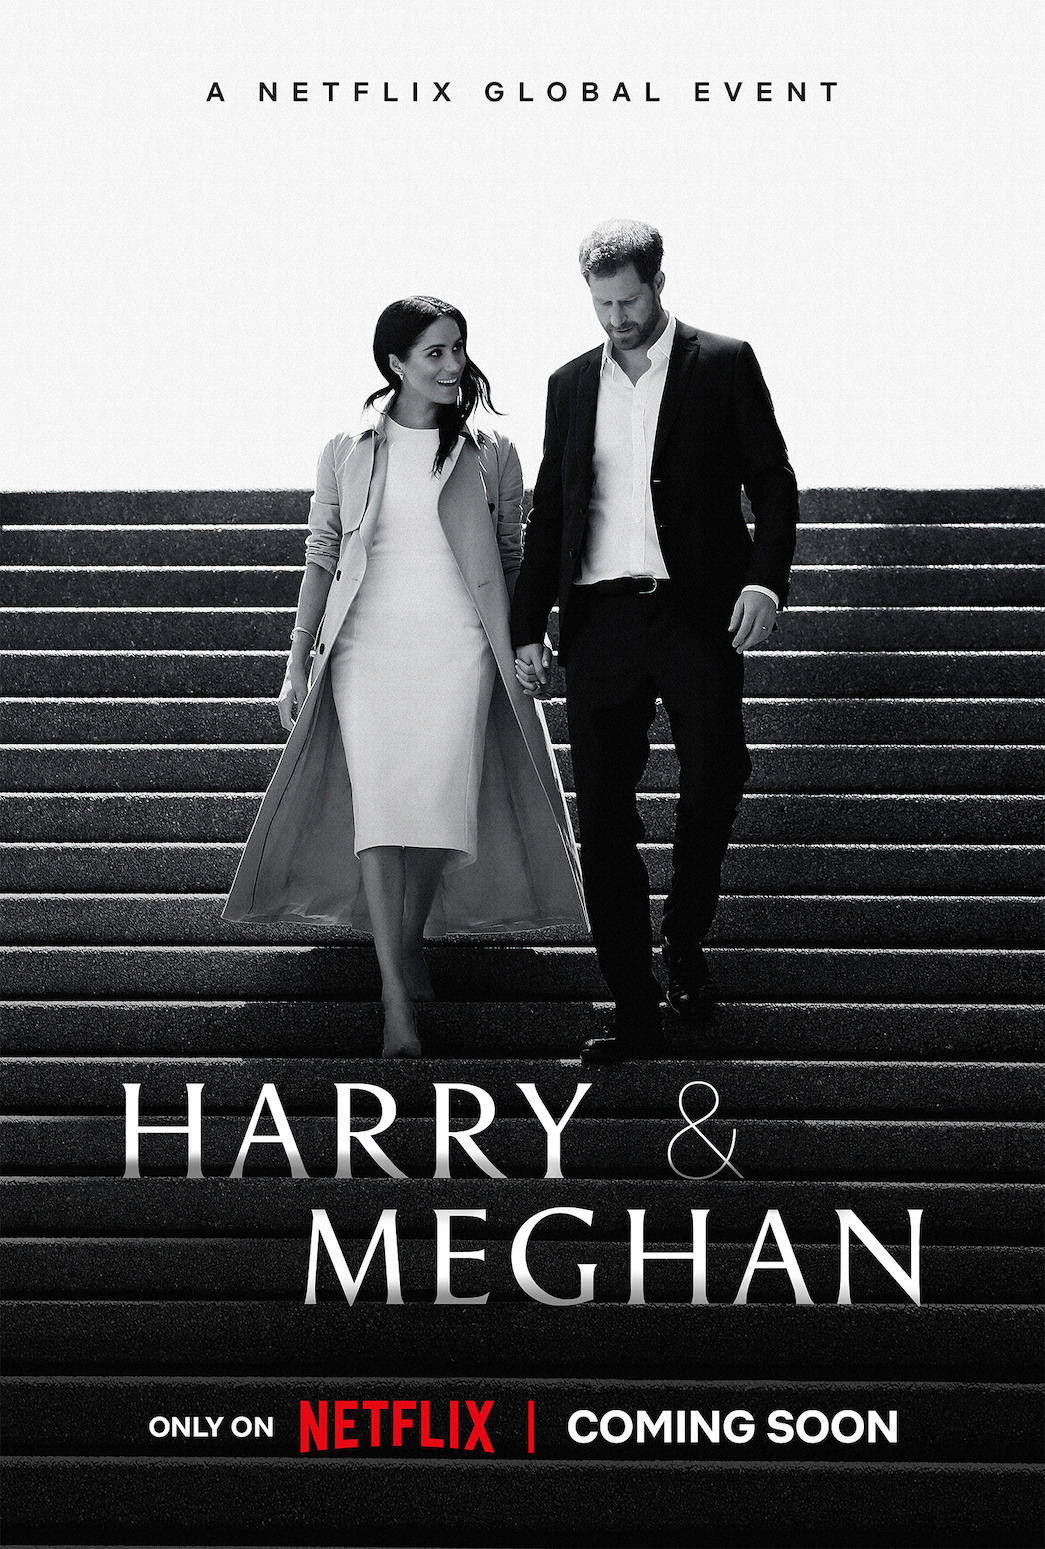 Harry Meghan,Netflix,poster